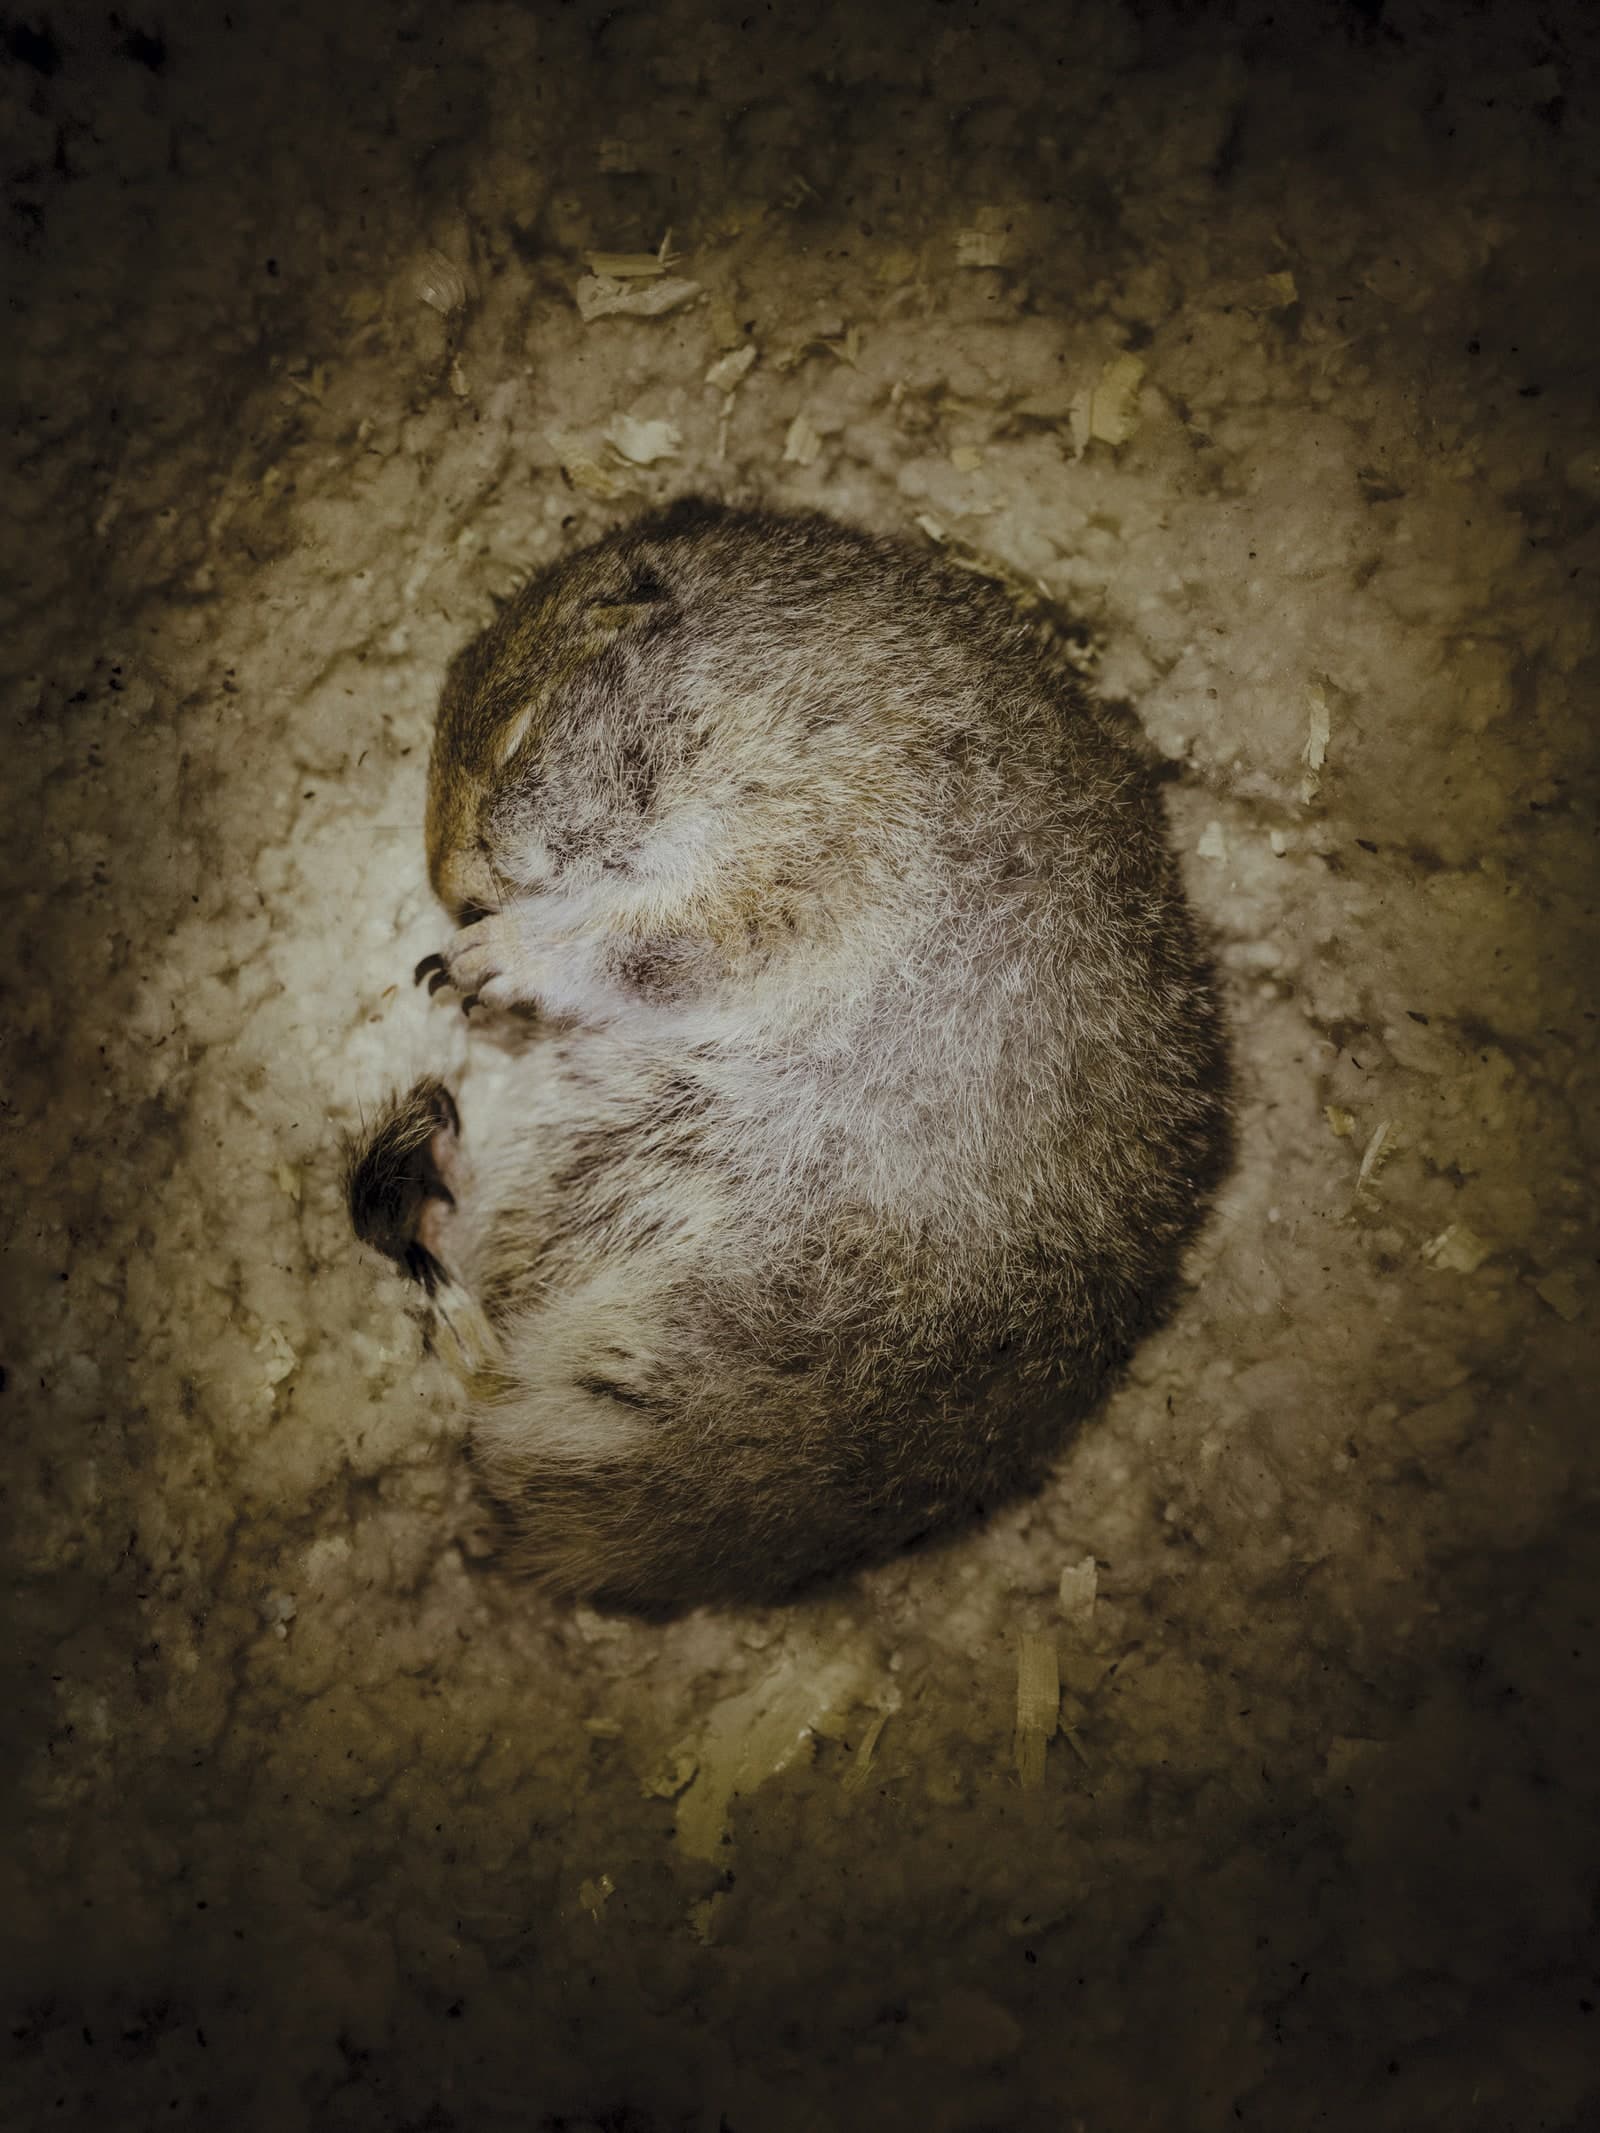 سنجاب زمینی قطبی در خواب زمستانی